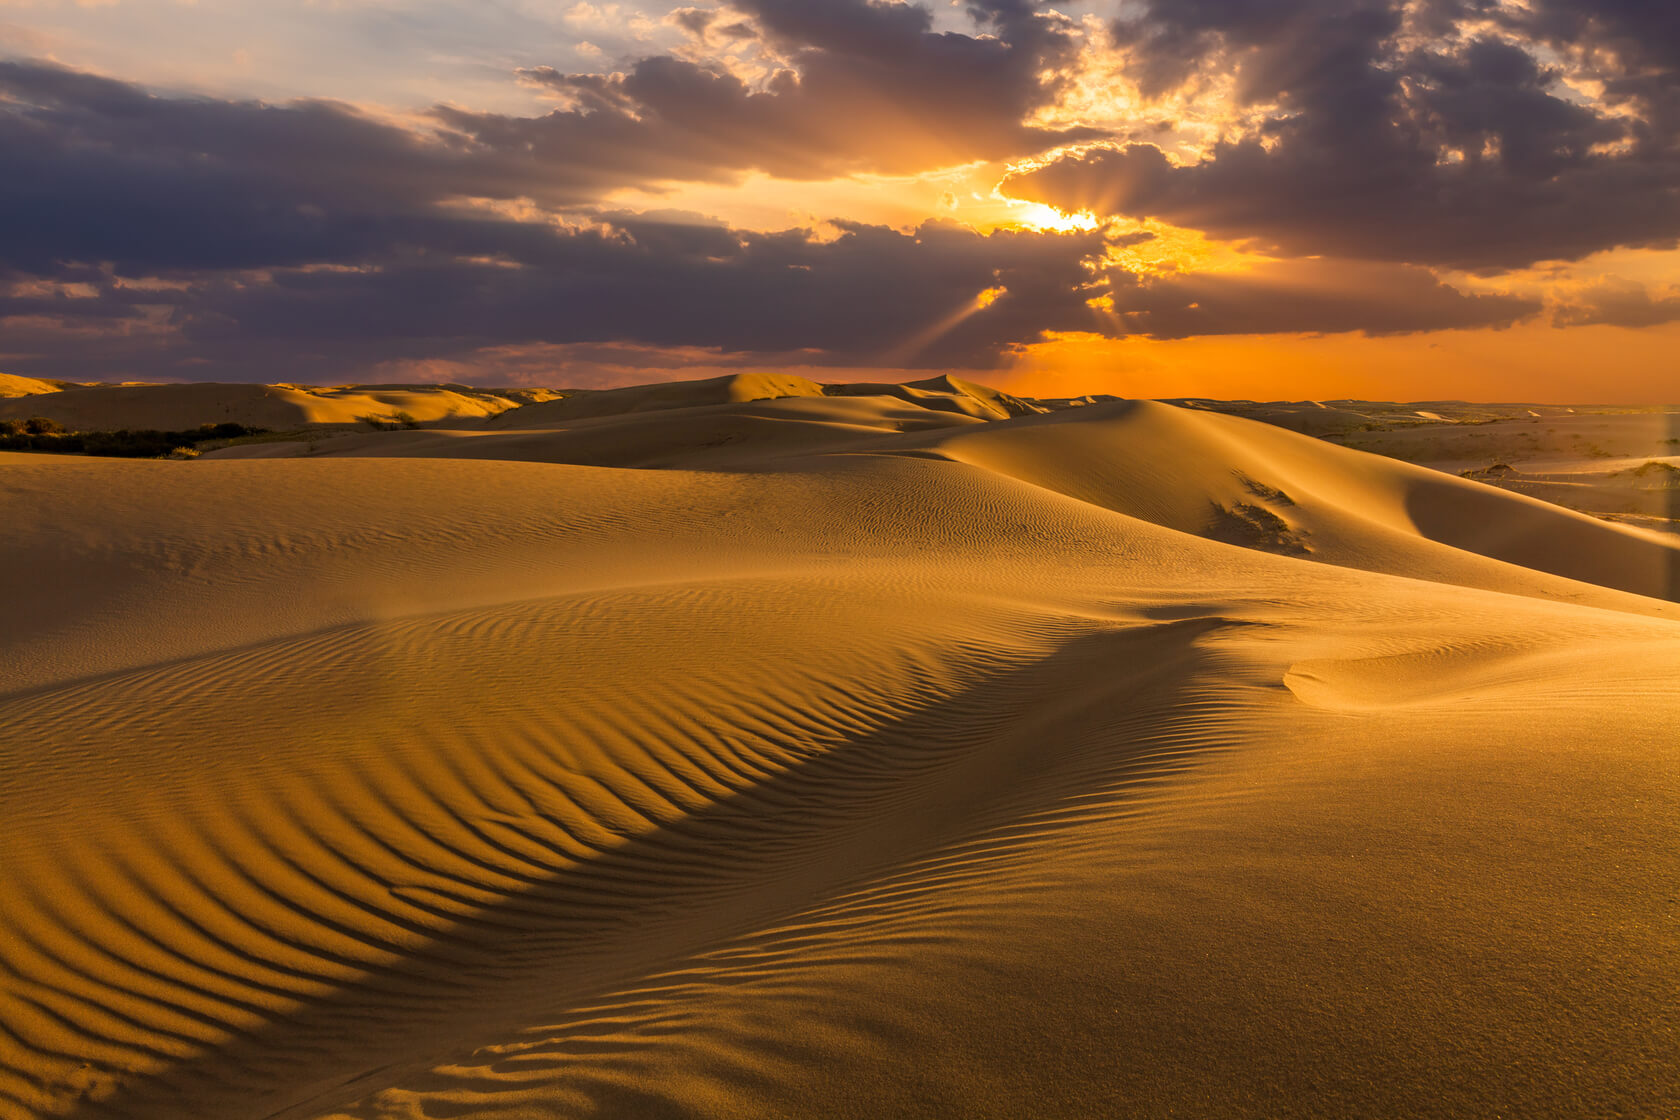 Sand dunes in the desert at sunset Doha